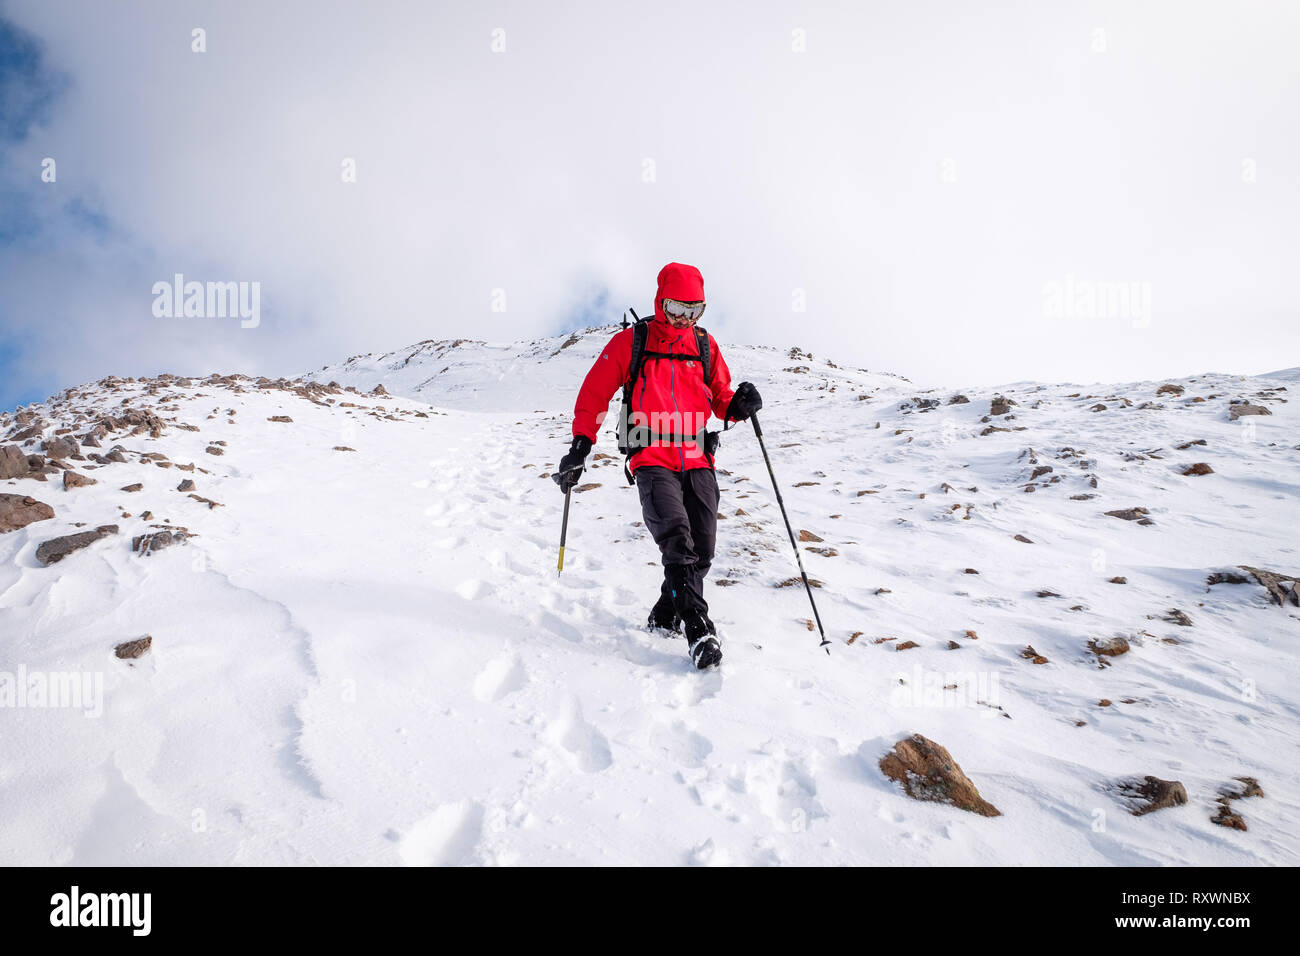 L'homme à la veste rouge, avec piolet randonnée / Escalade en hiver sur la montagne couverte de neige en Ecosse. Modèle libération - Garbh Bheinn, Highlands Loch Leven Banque D'Images